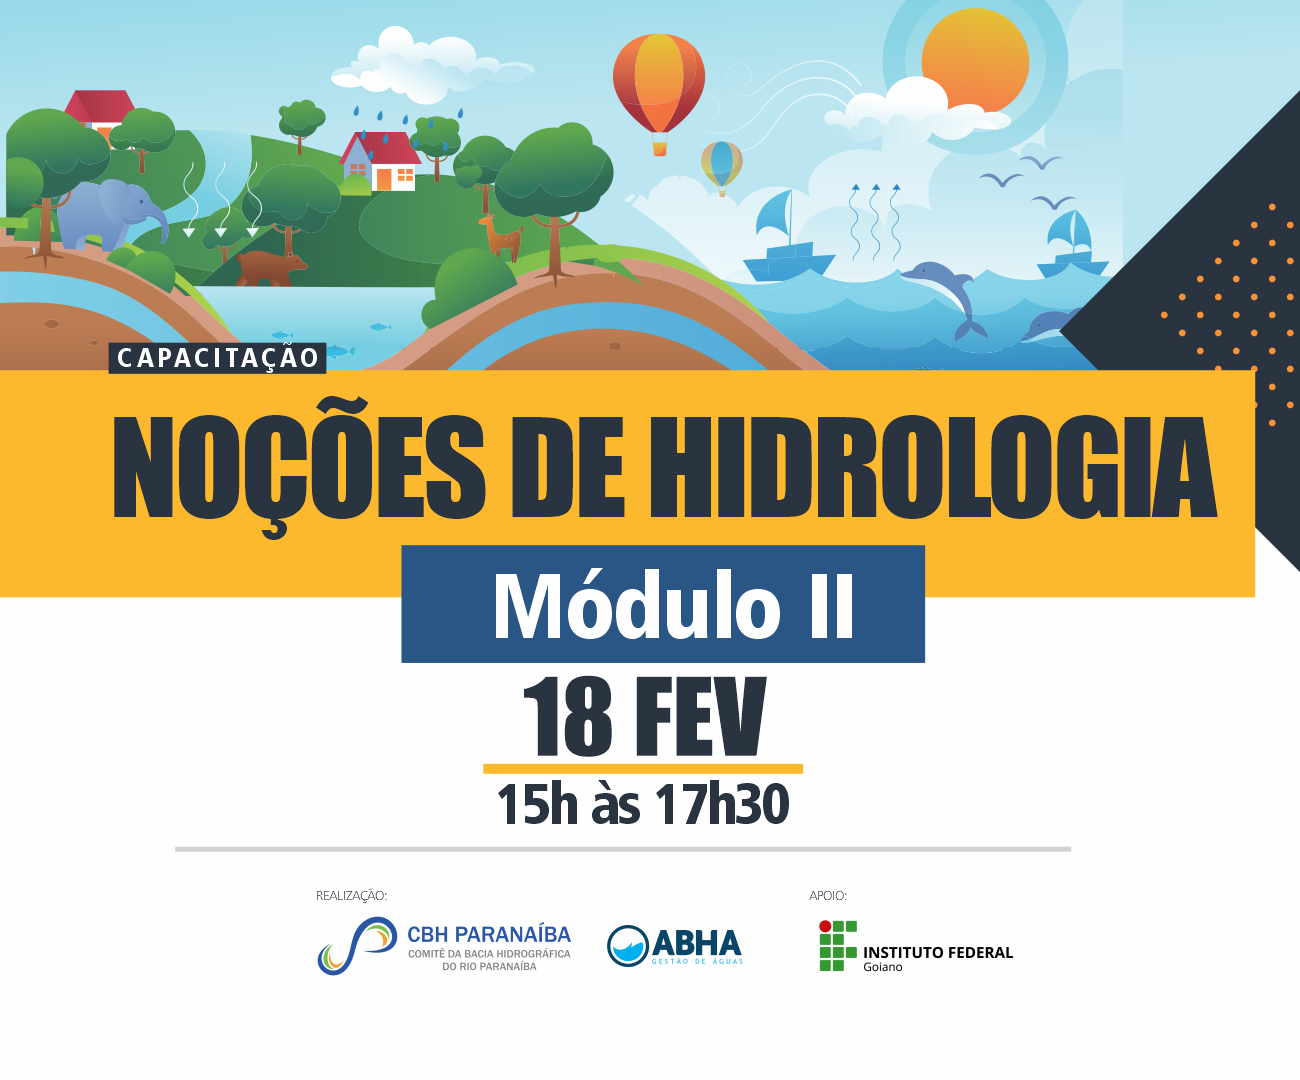 Comitê do Rio Paranaíba promove segundo módulo de capacitação em hidrologia